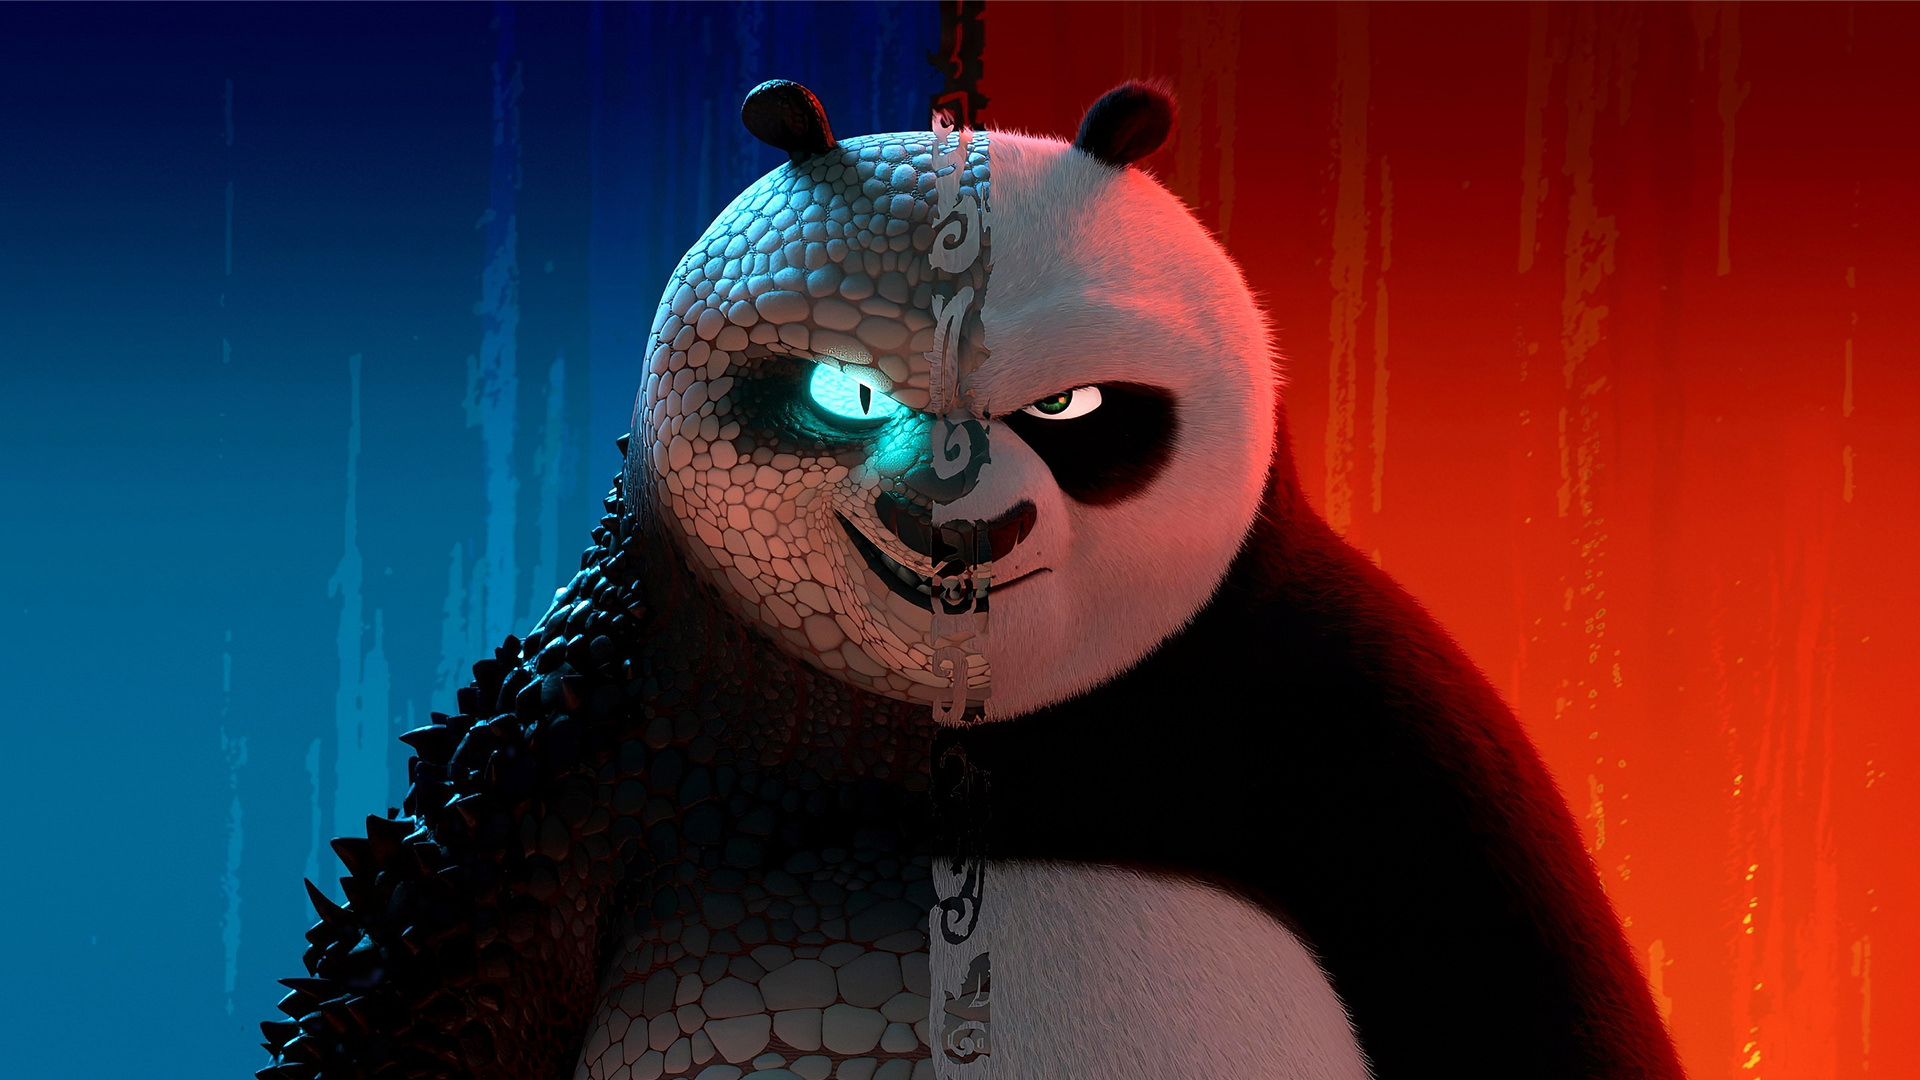 انیمیشن پاندا کونگ فو کار Kung Fu Panda 4